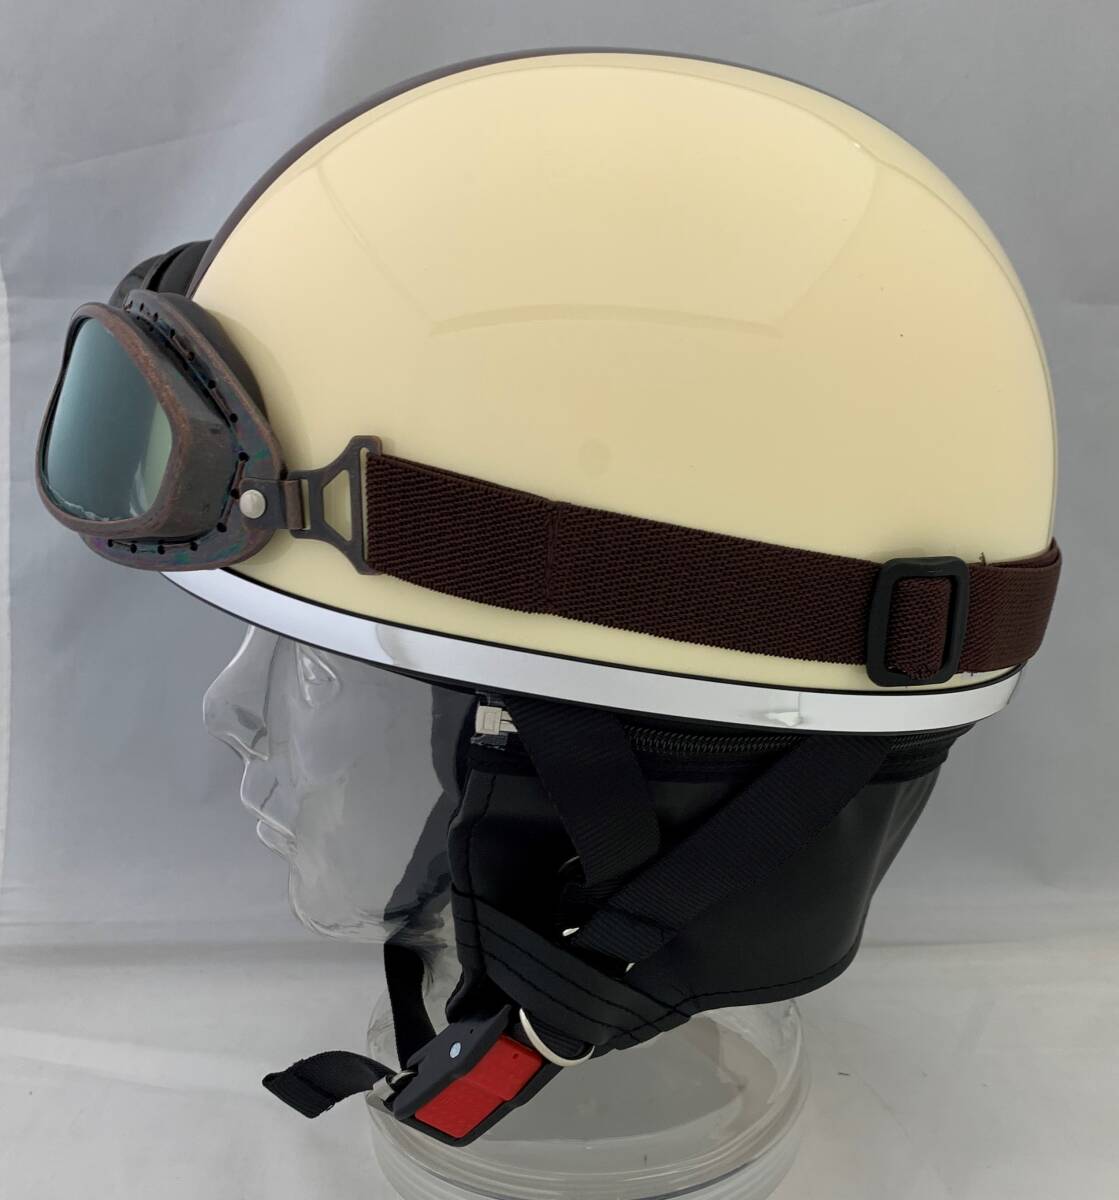 ゴーグル付き半キャップヘルメット ビンテージヘルメット ハーフキャップヘルメット アイボリーの画像2